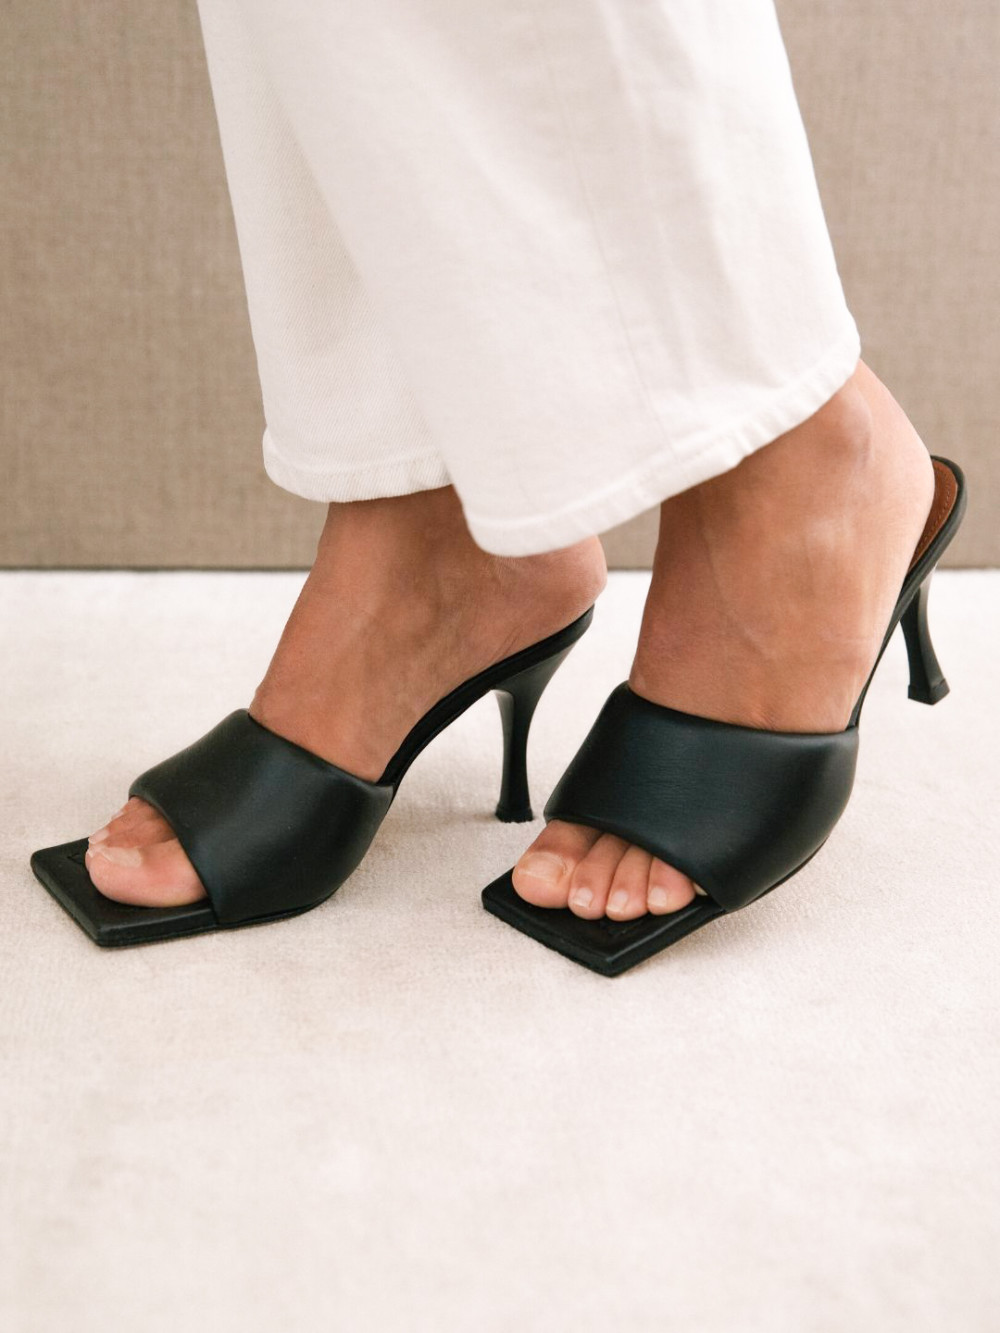 Blog Mode Chaussures Tendance Printemps été 2020 Mules Talon Sandales Bout Carré Sandales Brides 11